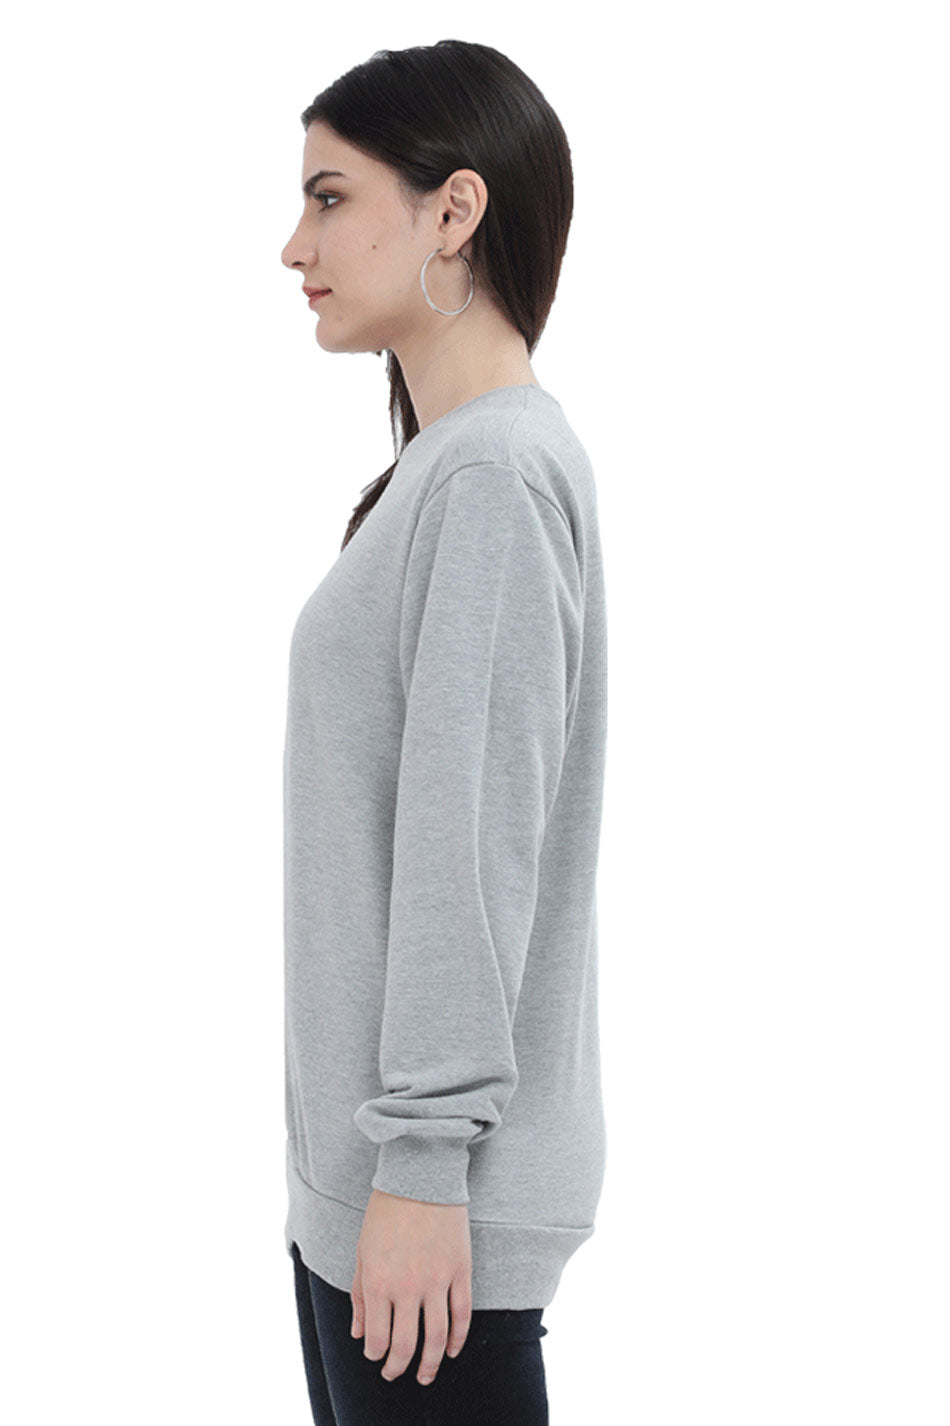 Sweatshirt grey melange for women by the Wildgear